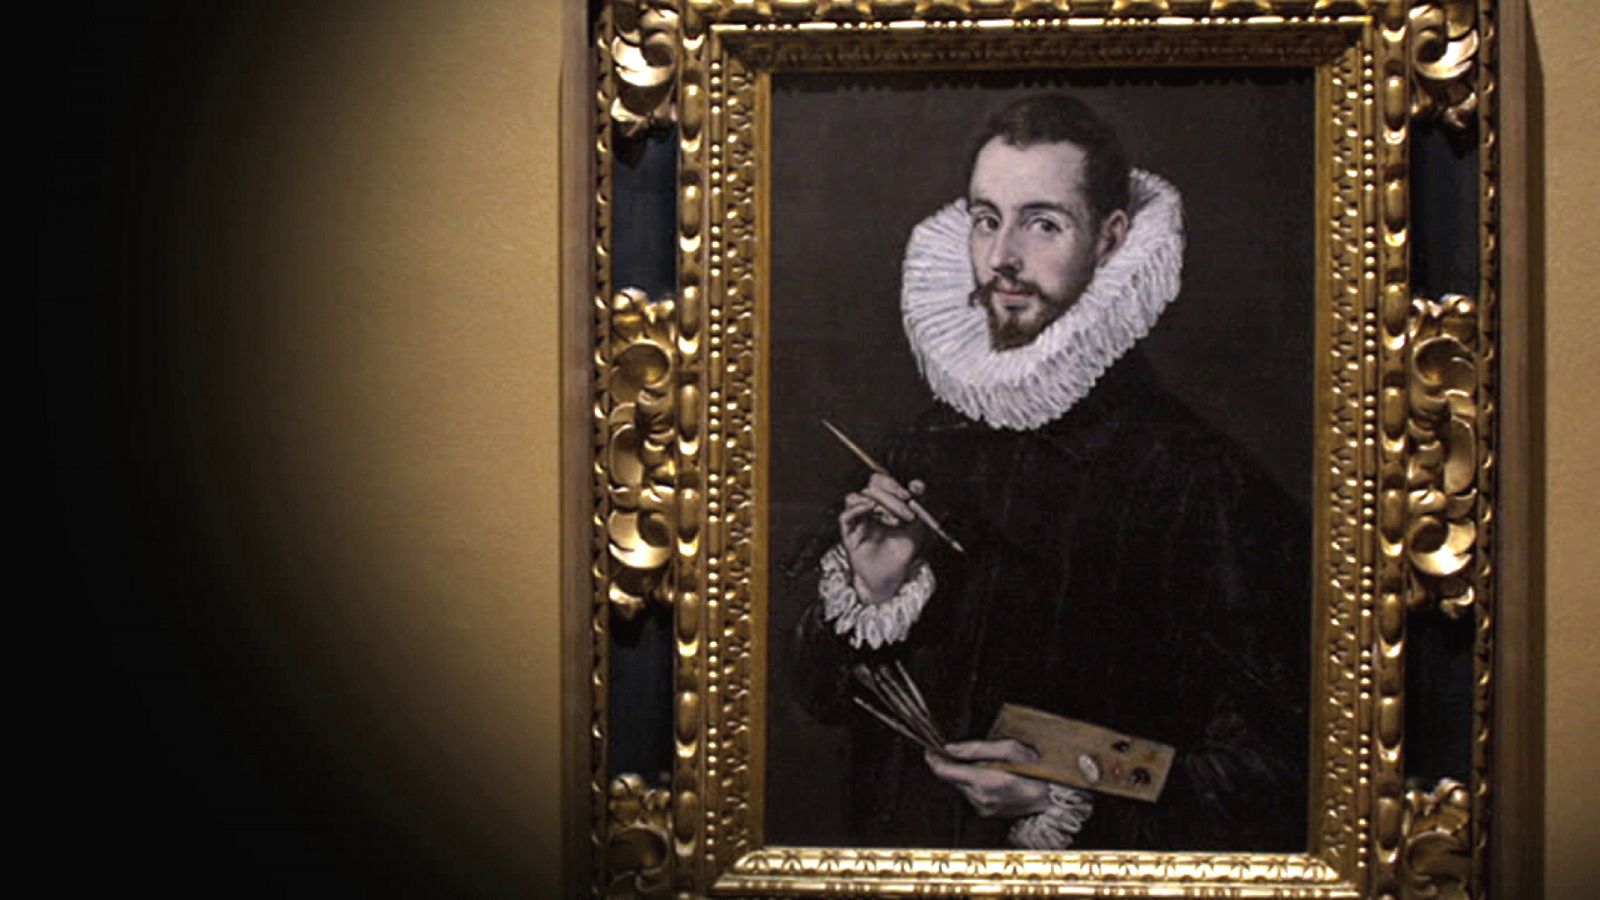 El Greco, alma y luz universales - Episodio 4: Destino español - Documental en RTVE